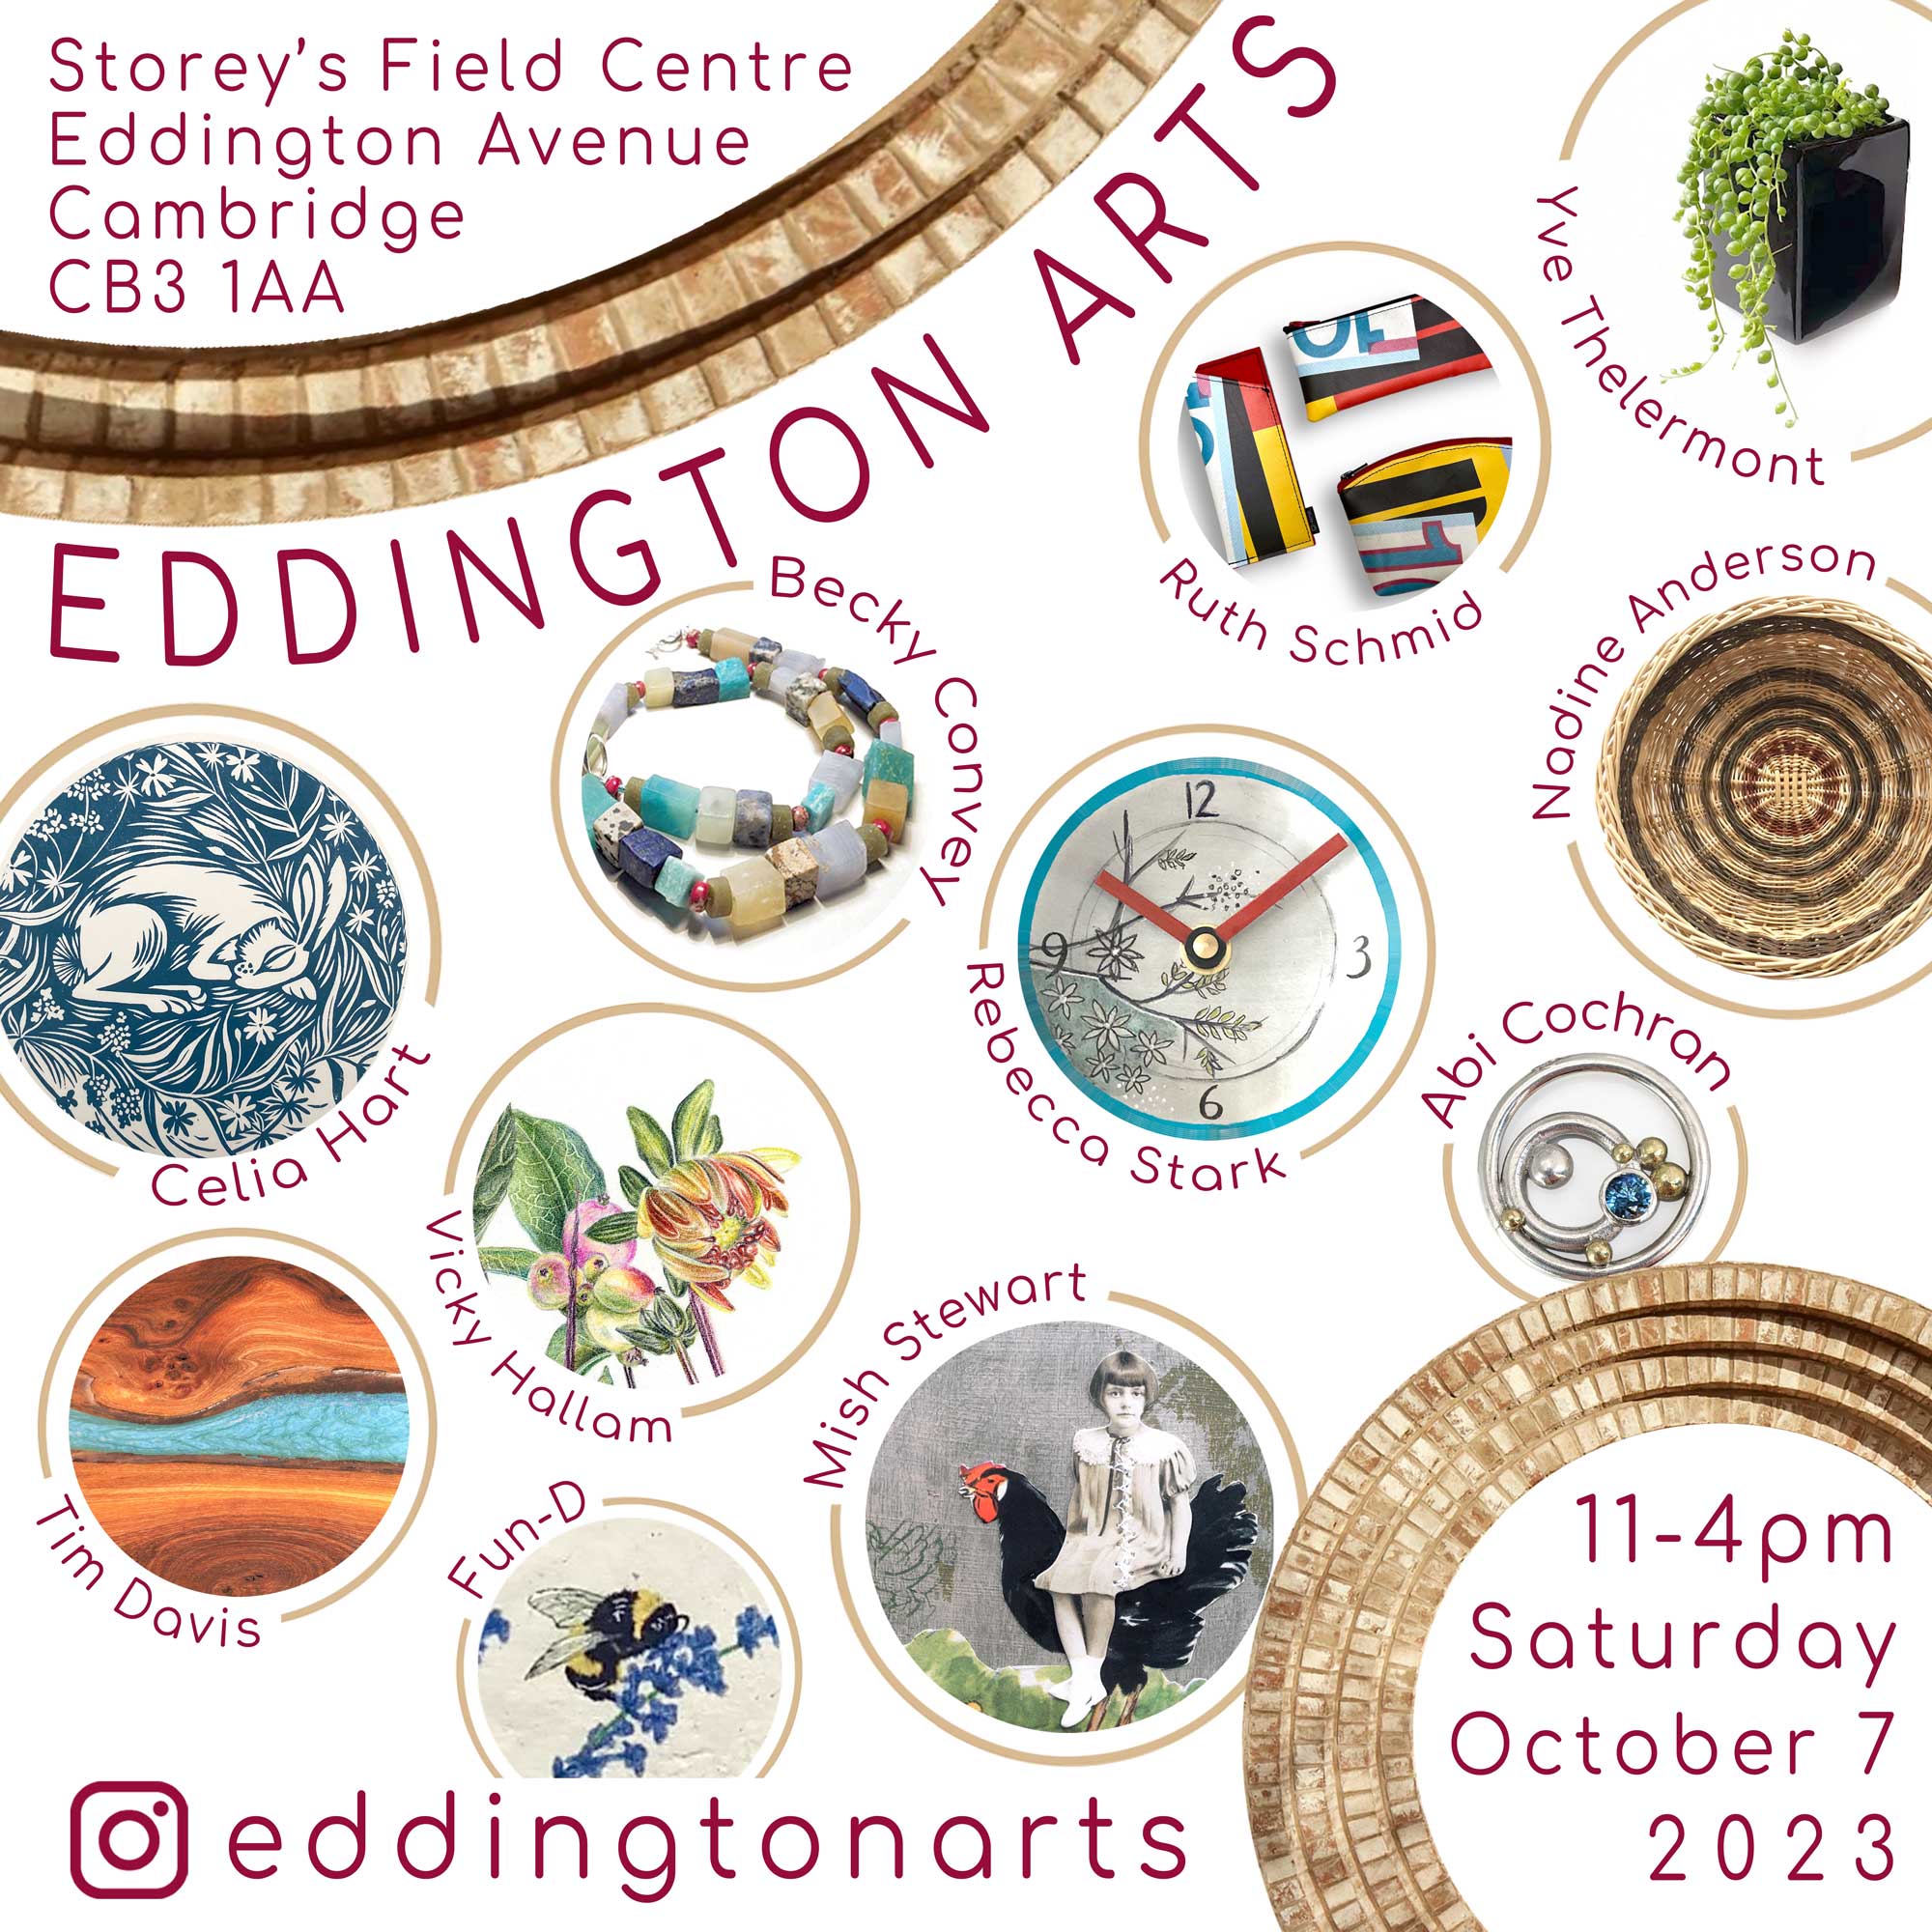 Eddington Arts event - 7th Sept 2023